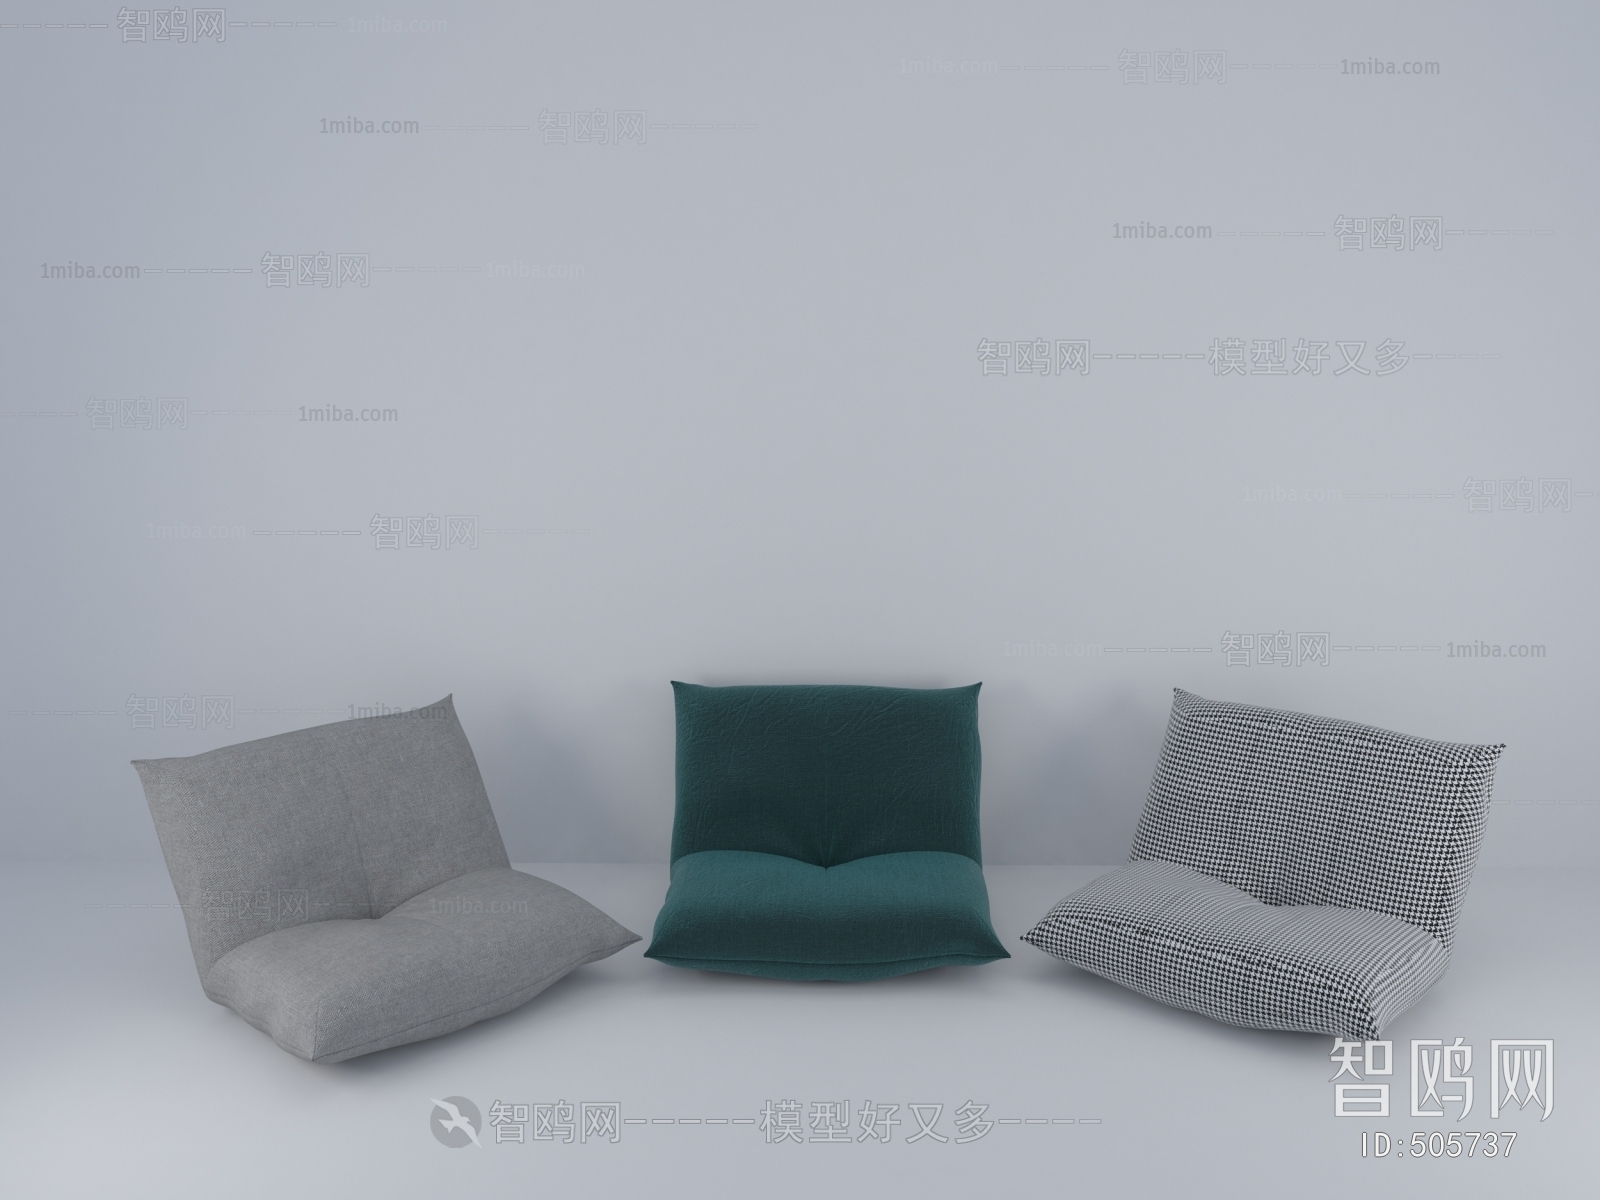 Modern Cushion